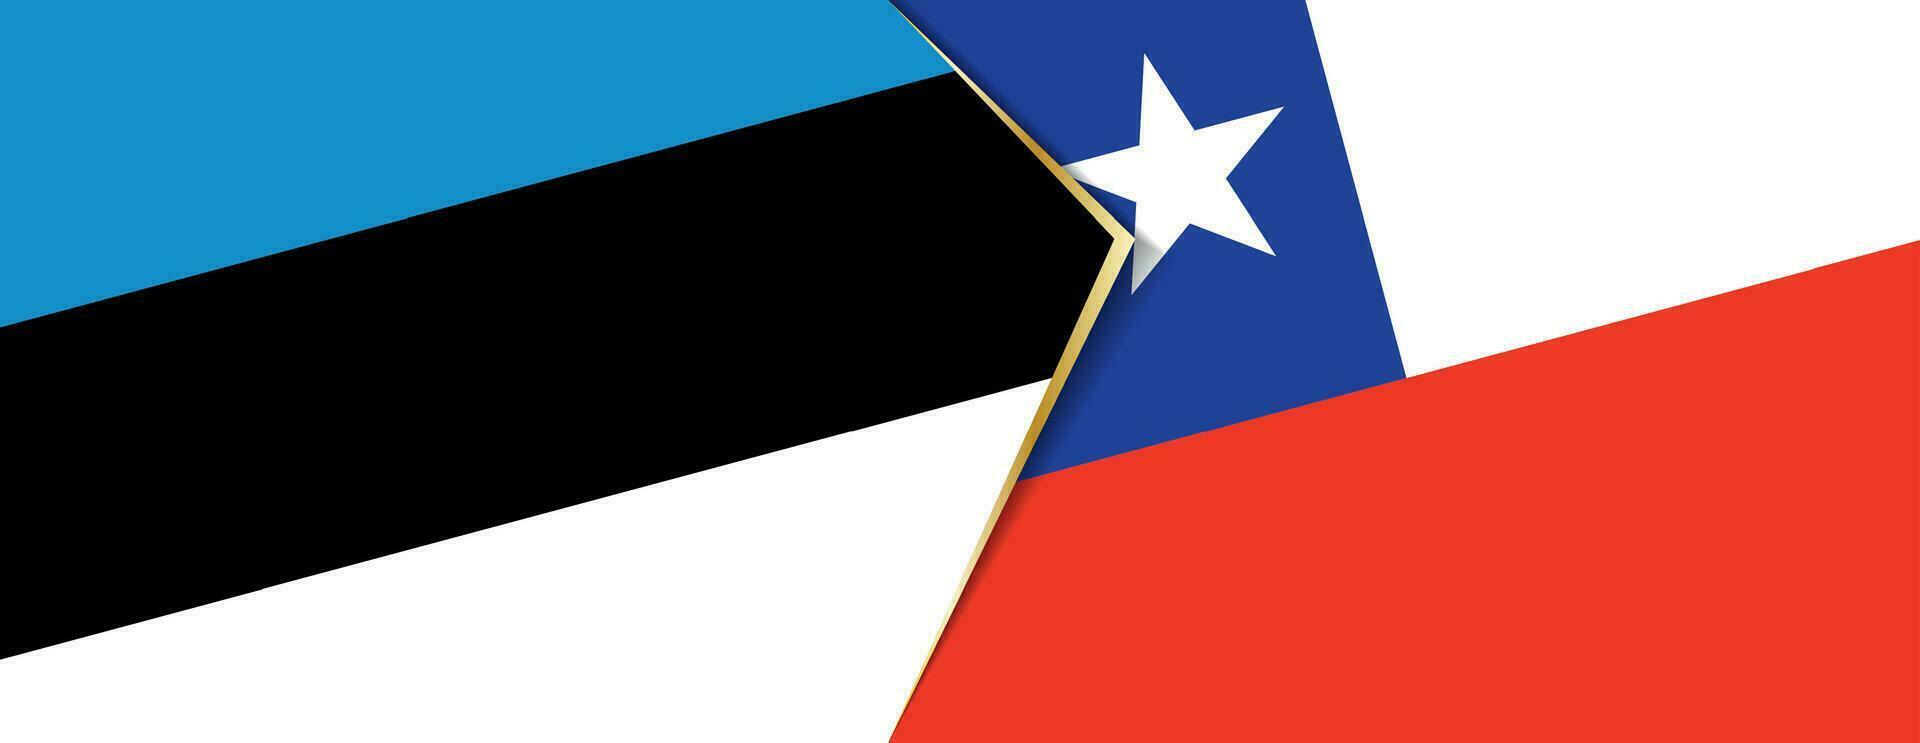 Estonia y Chile banderas, dos vector banderas